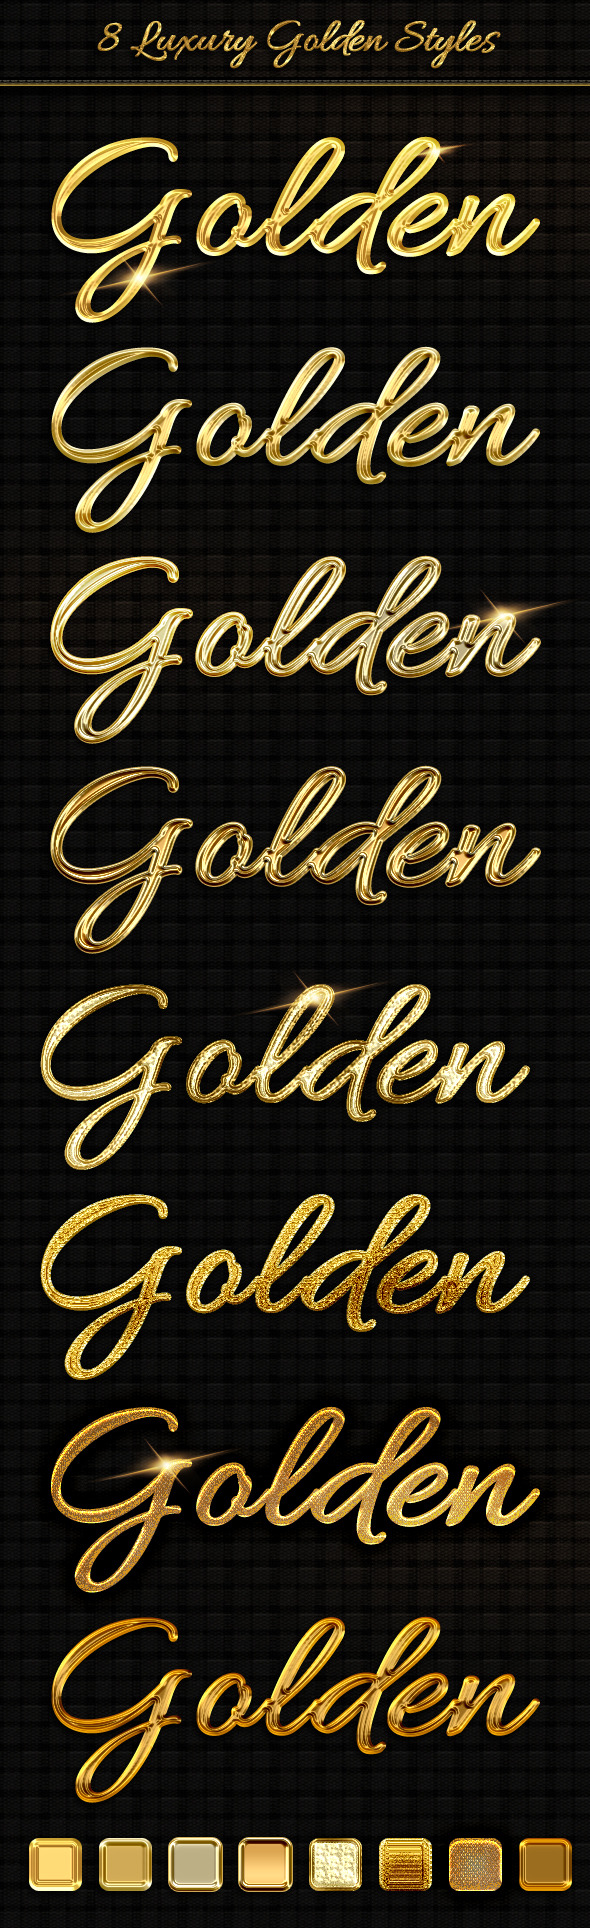 8 Luxury Golden Text Styles